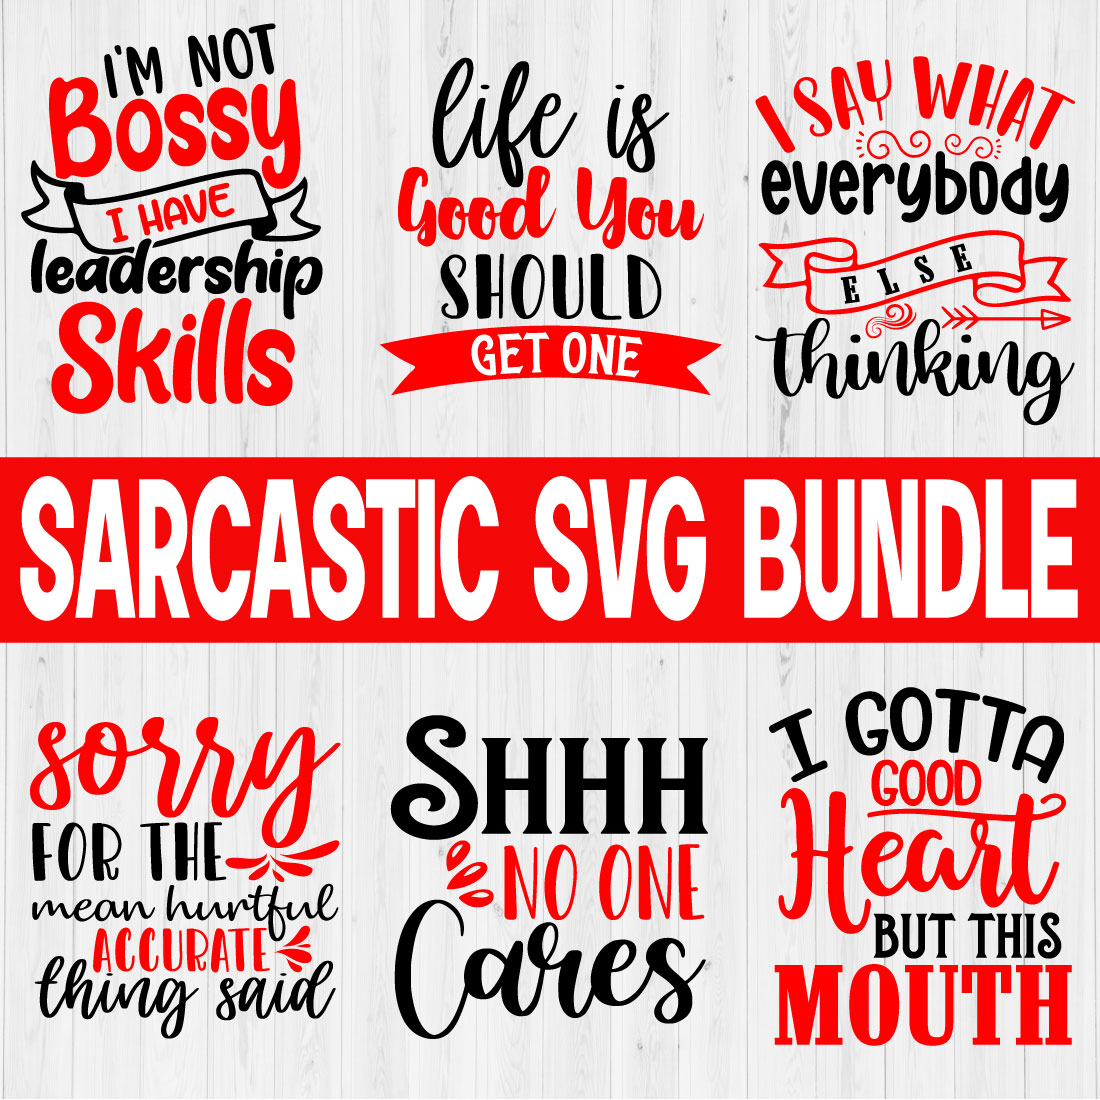 Sarcastic Svg T-shirt Design Bundle Vol16 cover image.